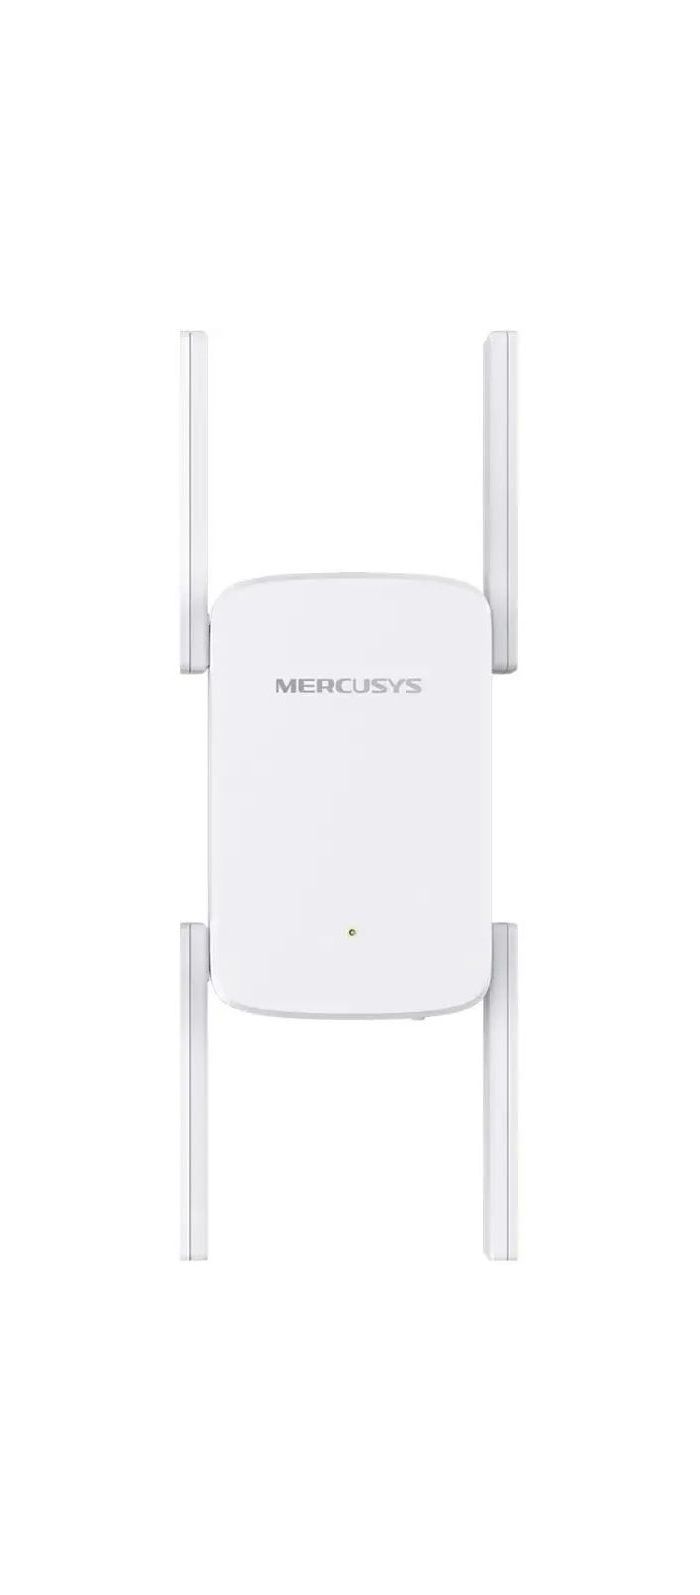 Усилитель Wi-Fi сигнала Mercusys ME50G усилитель сигнала mercusys me20 белый